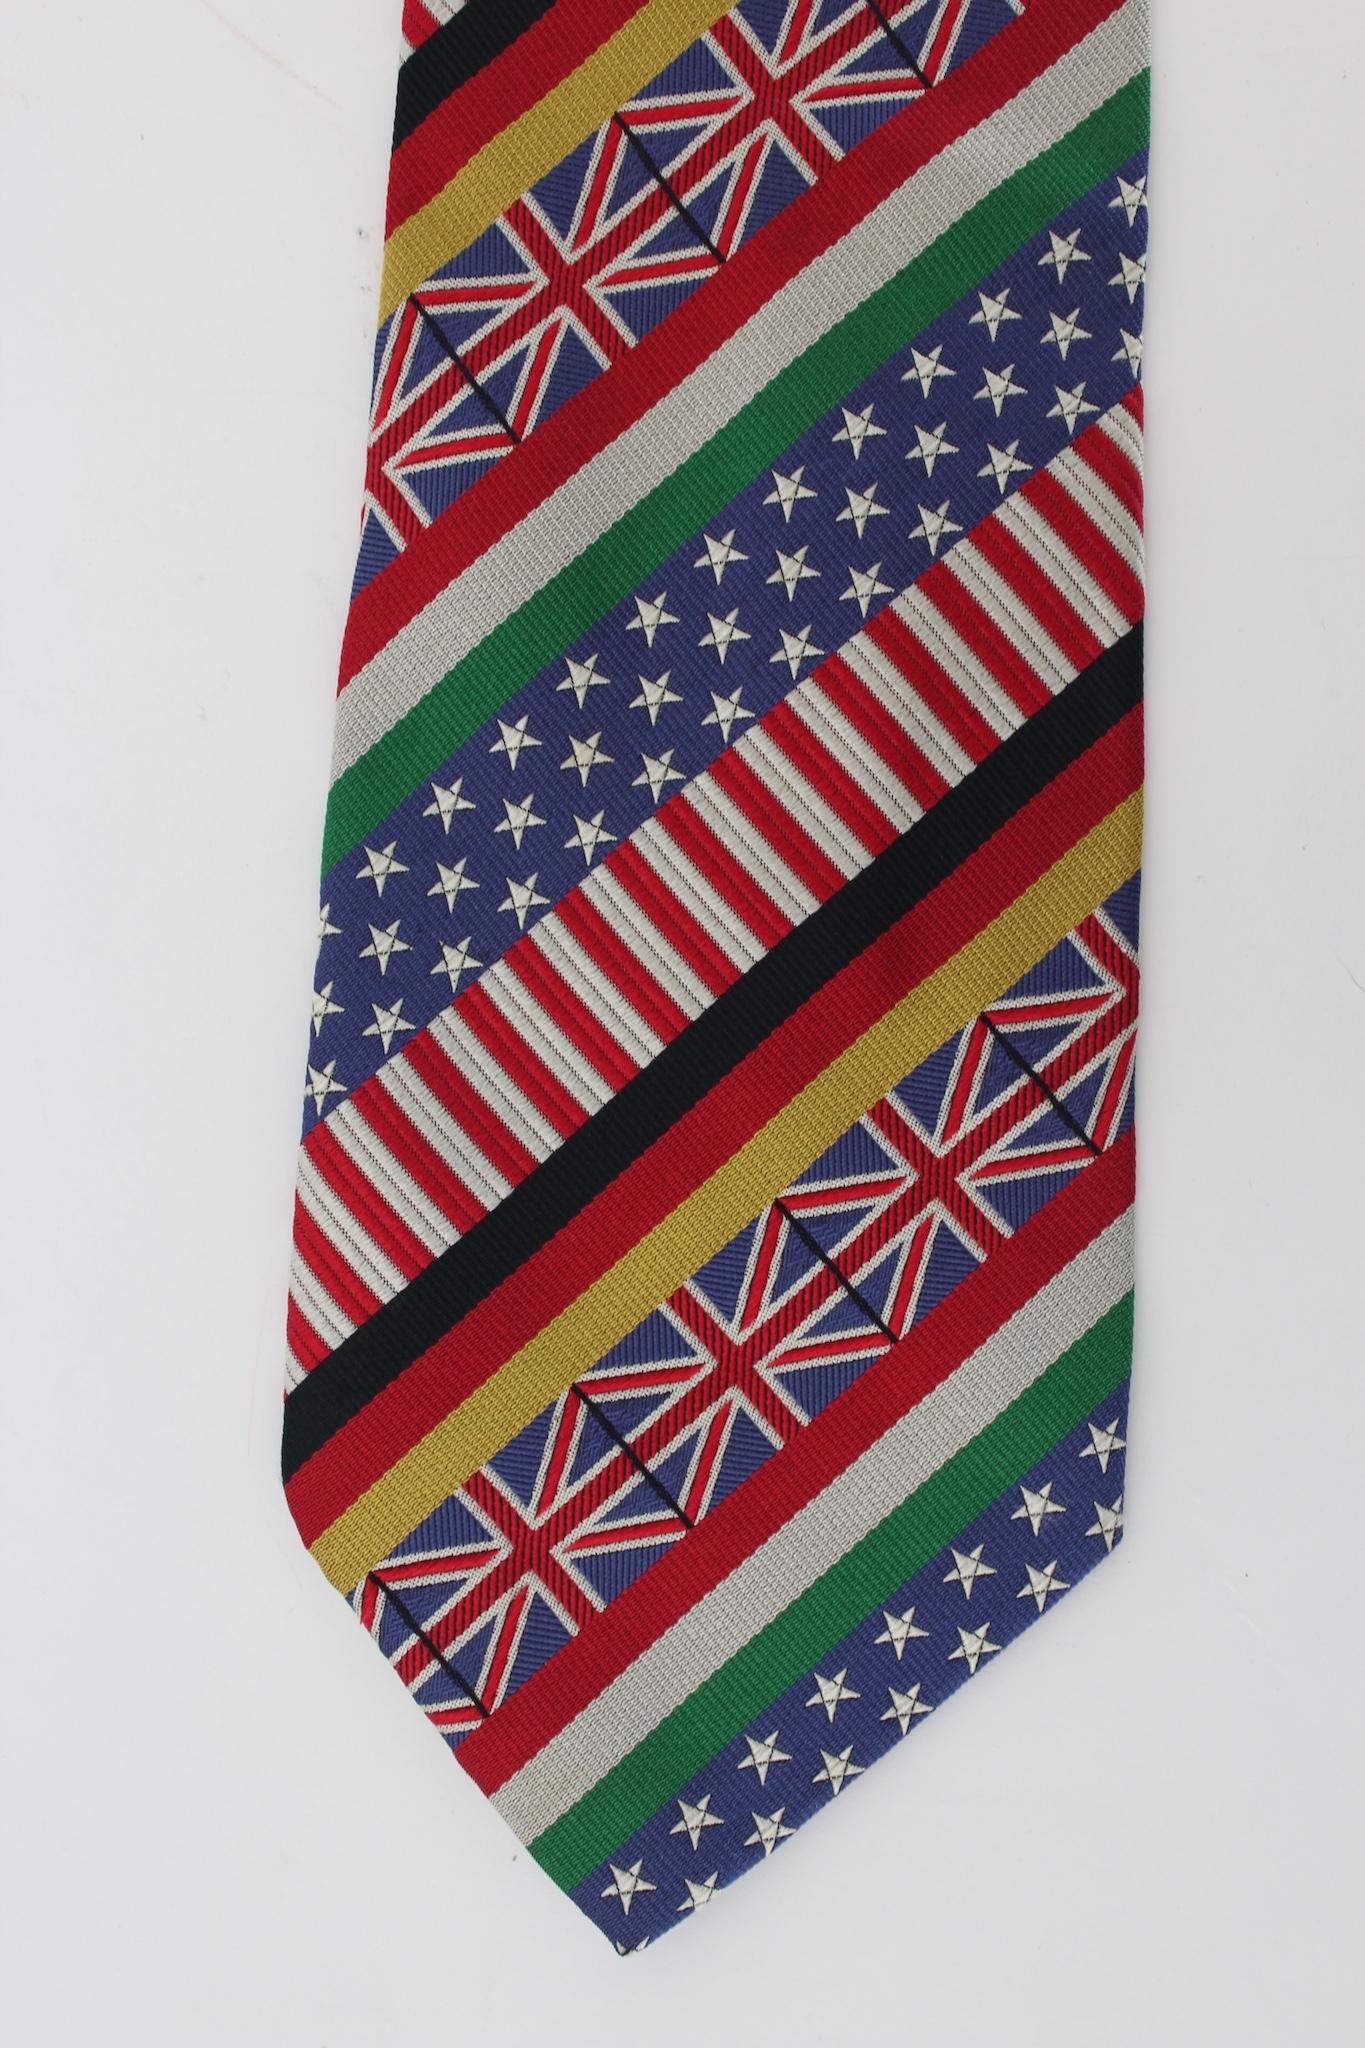 Moschino ikonische Krawatte aus den 90ern. Mehrfarbig mit verschiedenen Fahnen gestaltet, 100% Seidenstoff. Hergestellt in Italien.

Länge: 145 cm
Breite: 10 cm